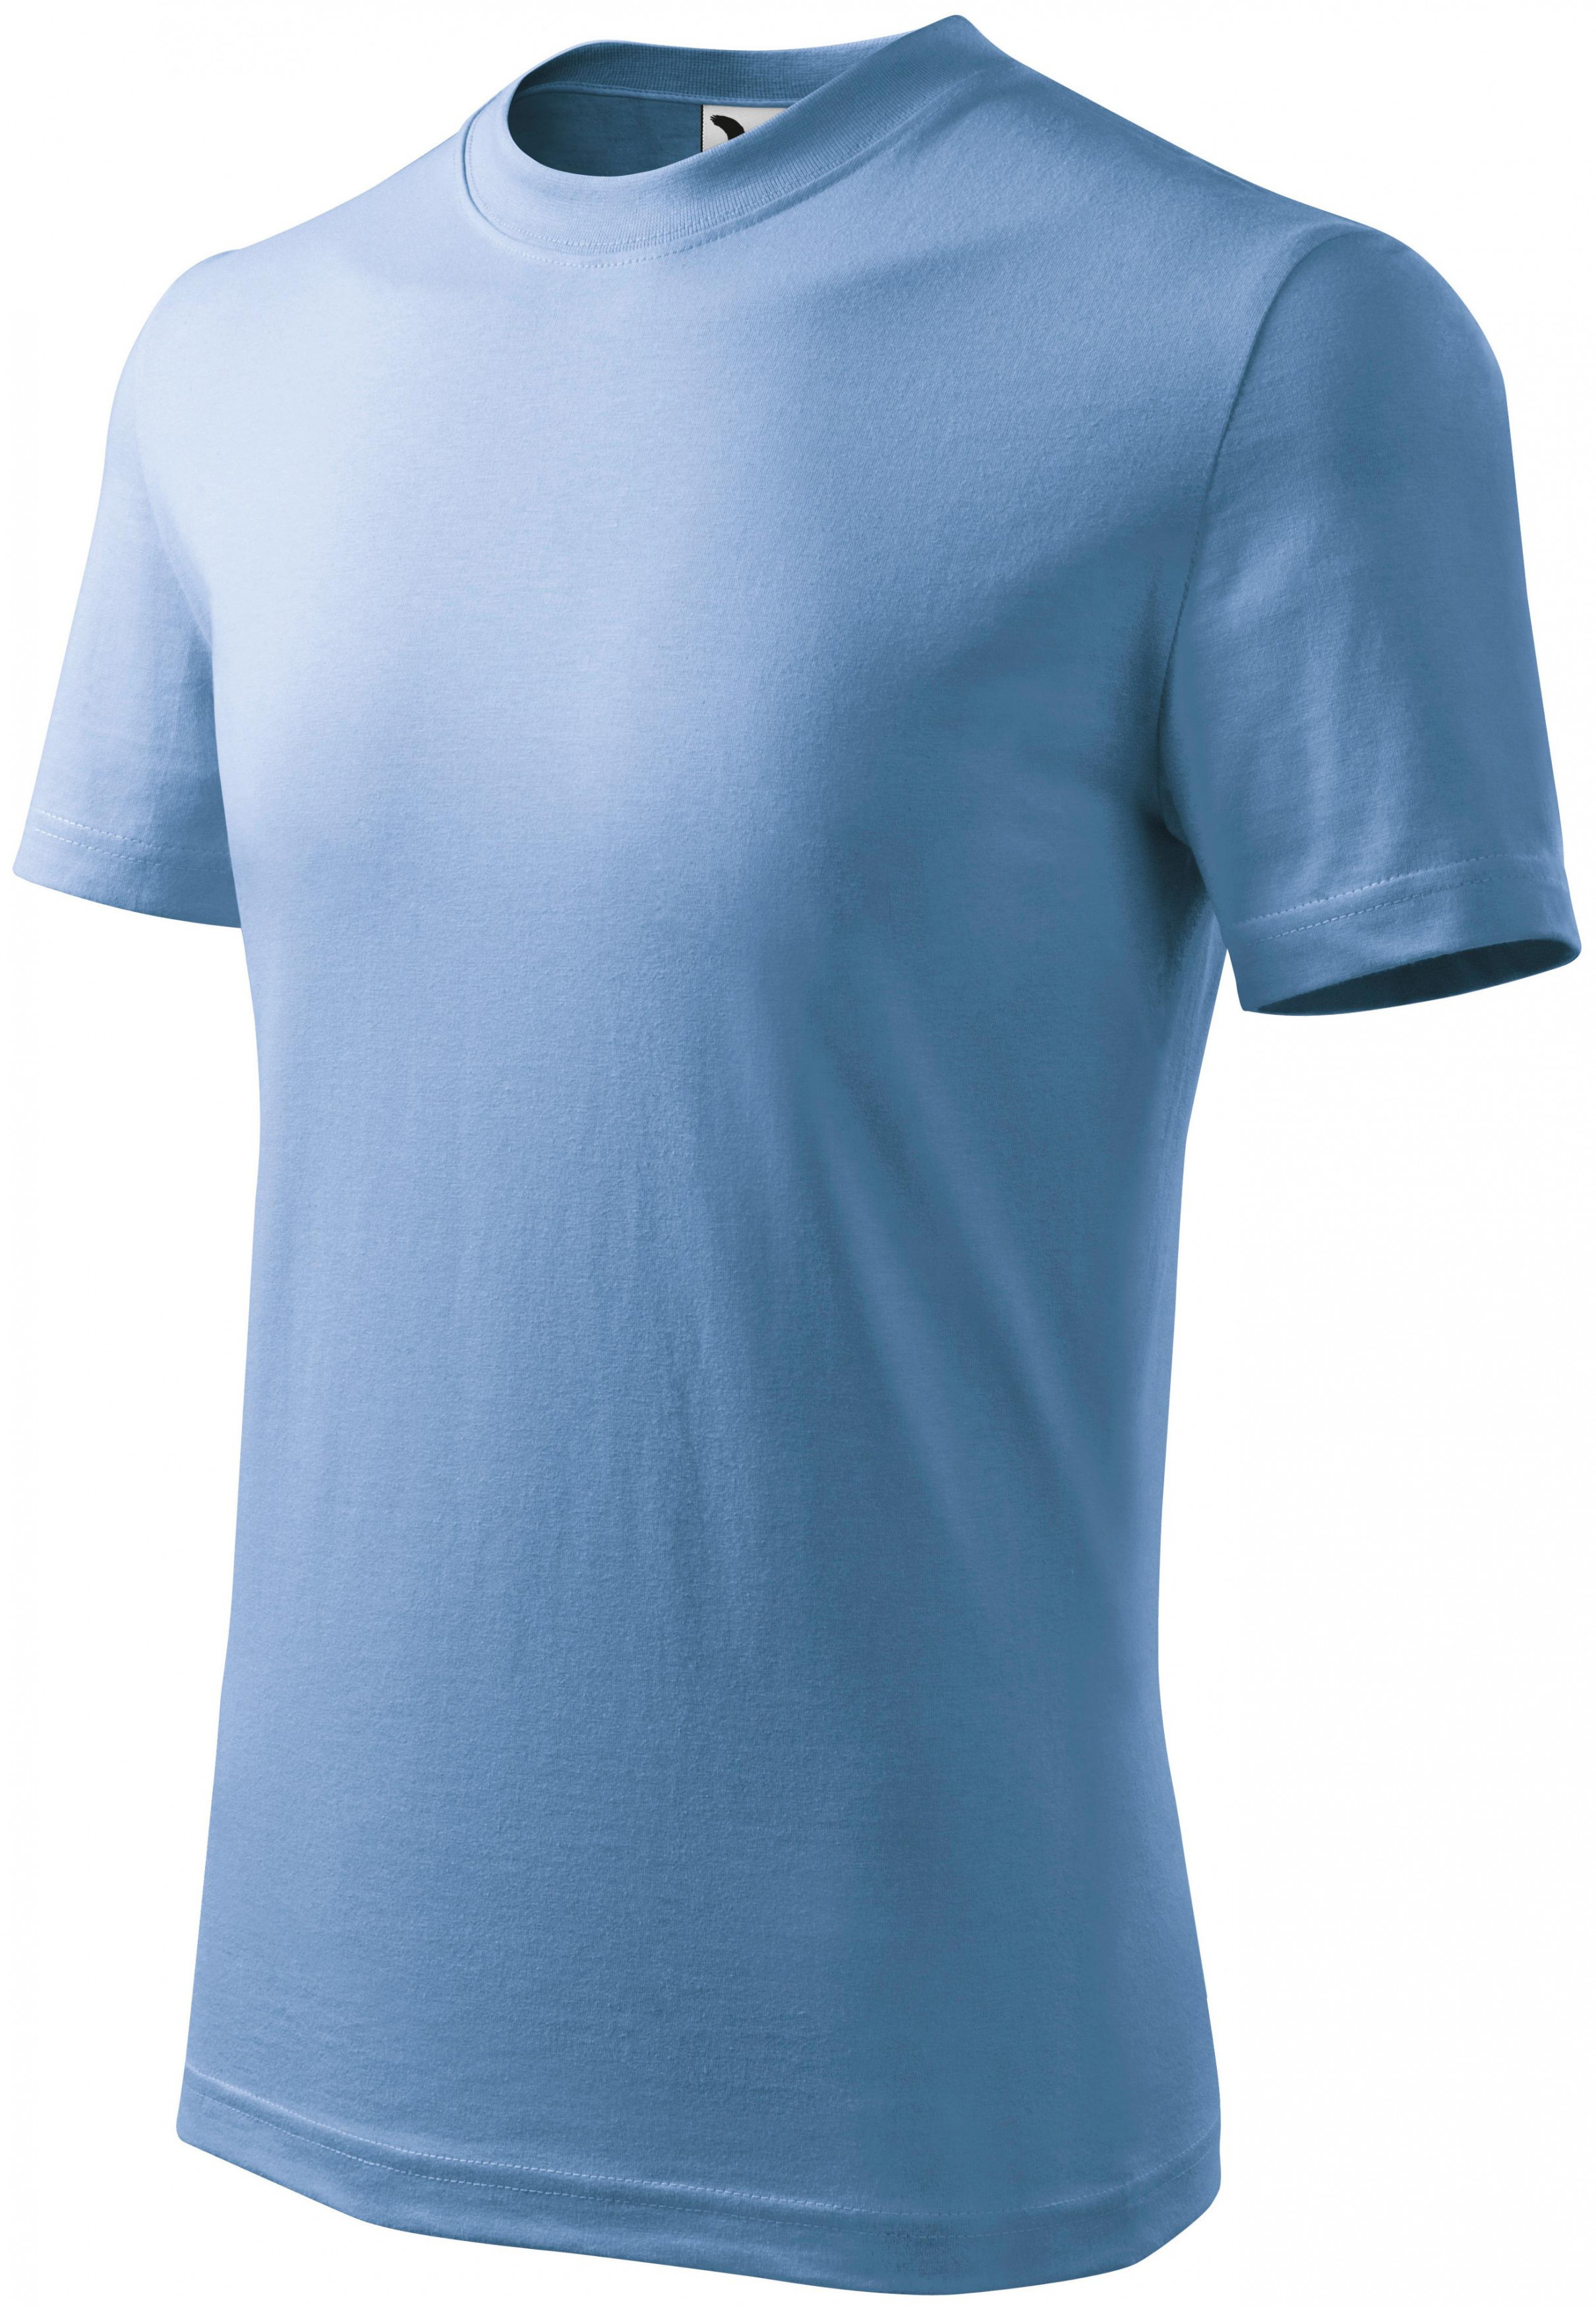 Detské tričko jednoduché, nebeská modrá, 158cm / 12rokov